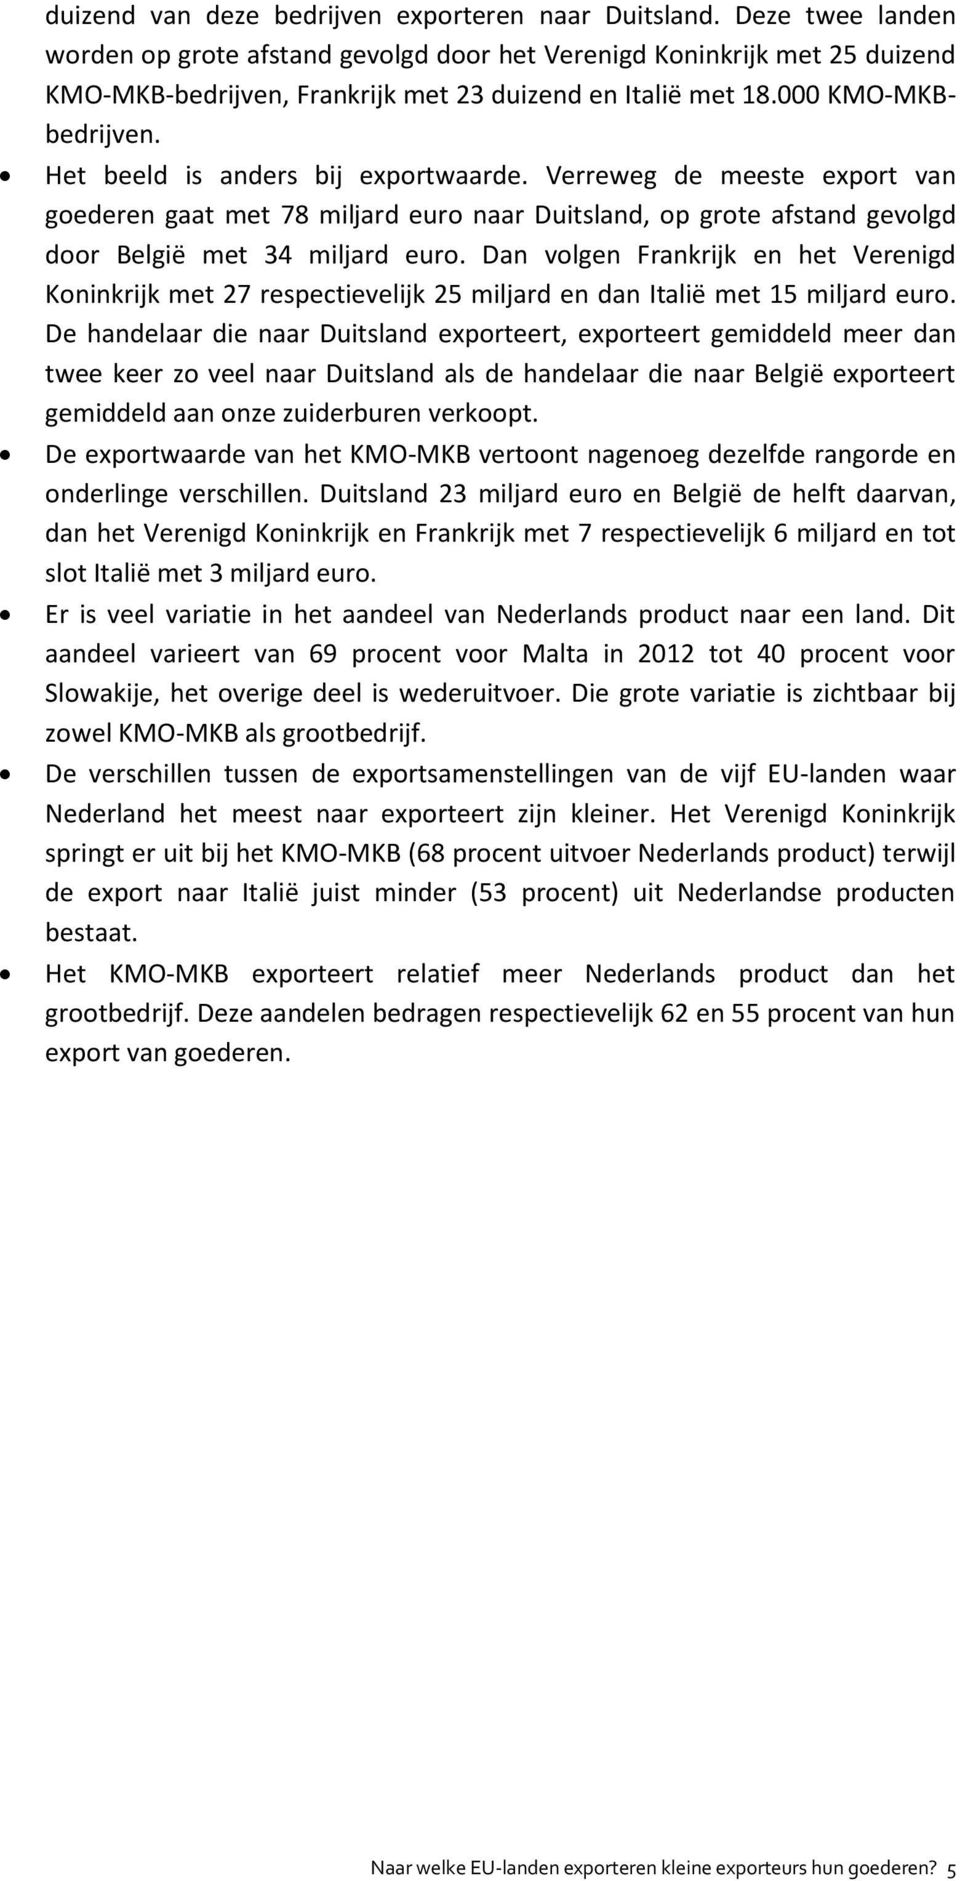 Het beeld is anders bij exportwaarde. Verreweg de meeste export van goederen gaat met 78 miljard euro naar Duitsland, op grote afstand gevolgd door België met 34 miljard euro.